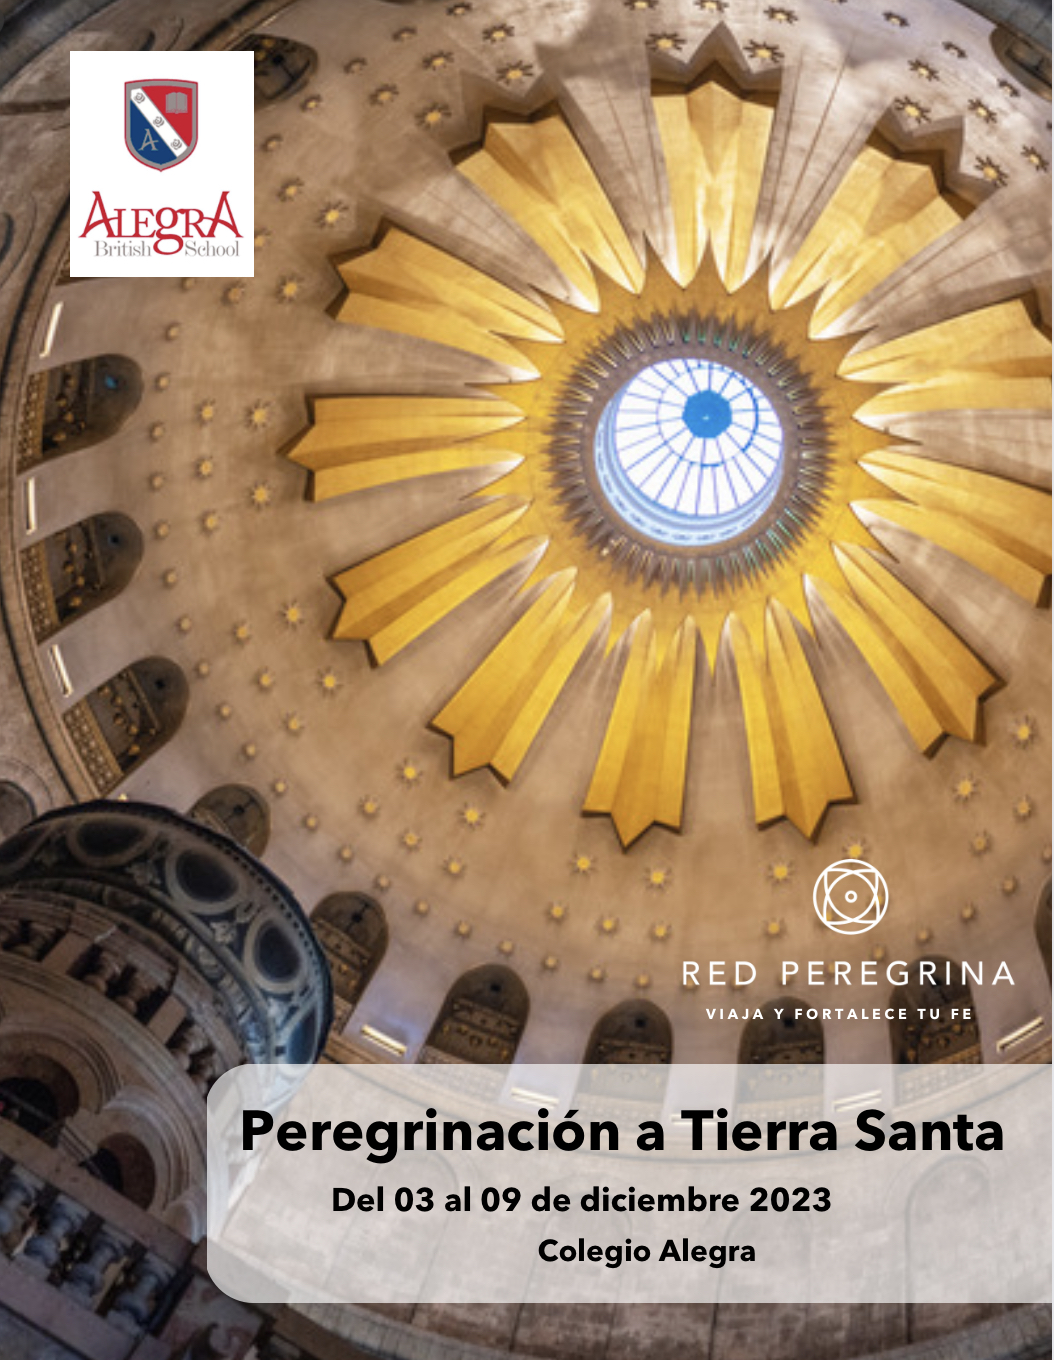 Peregrinación a Tierra Santa - Colegio Alegra